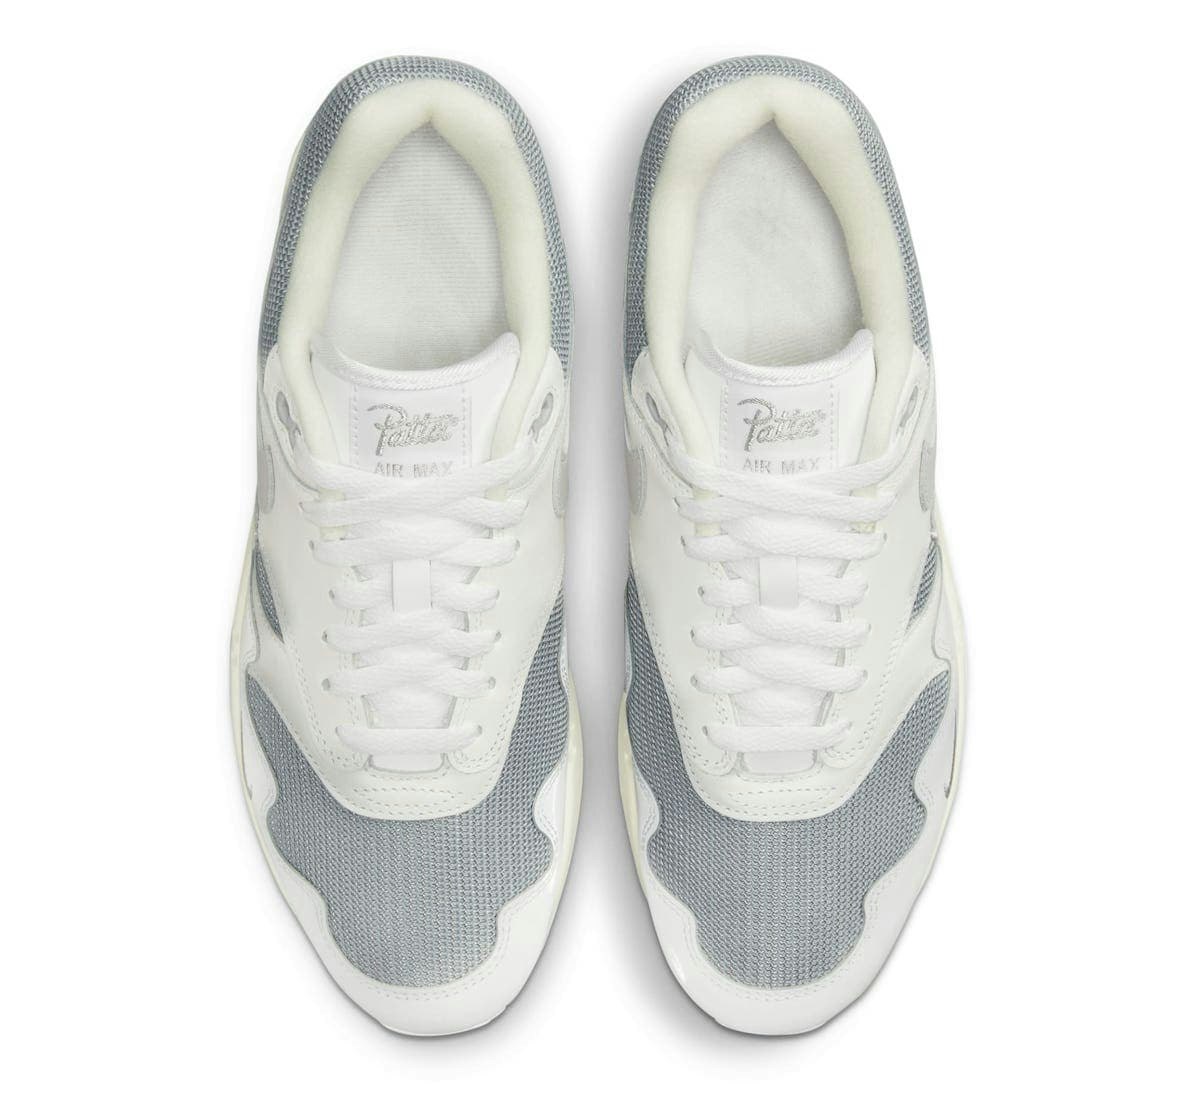 Patta x Nike Air Max 1 "White Grey" 